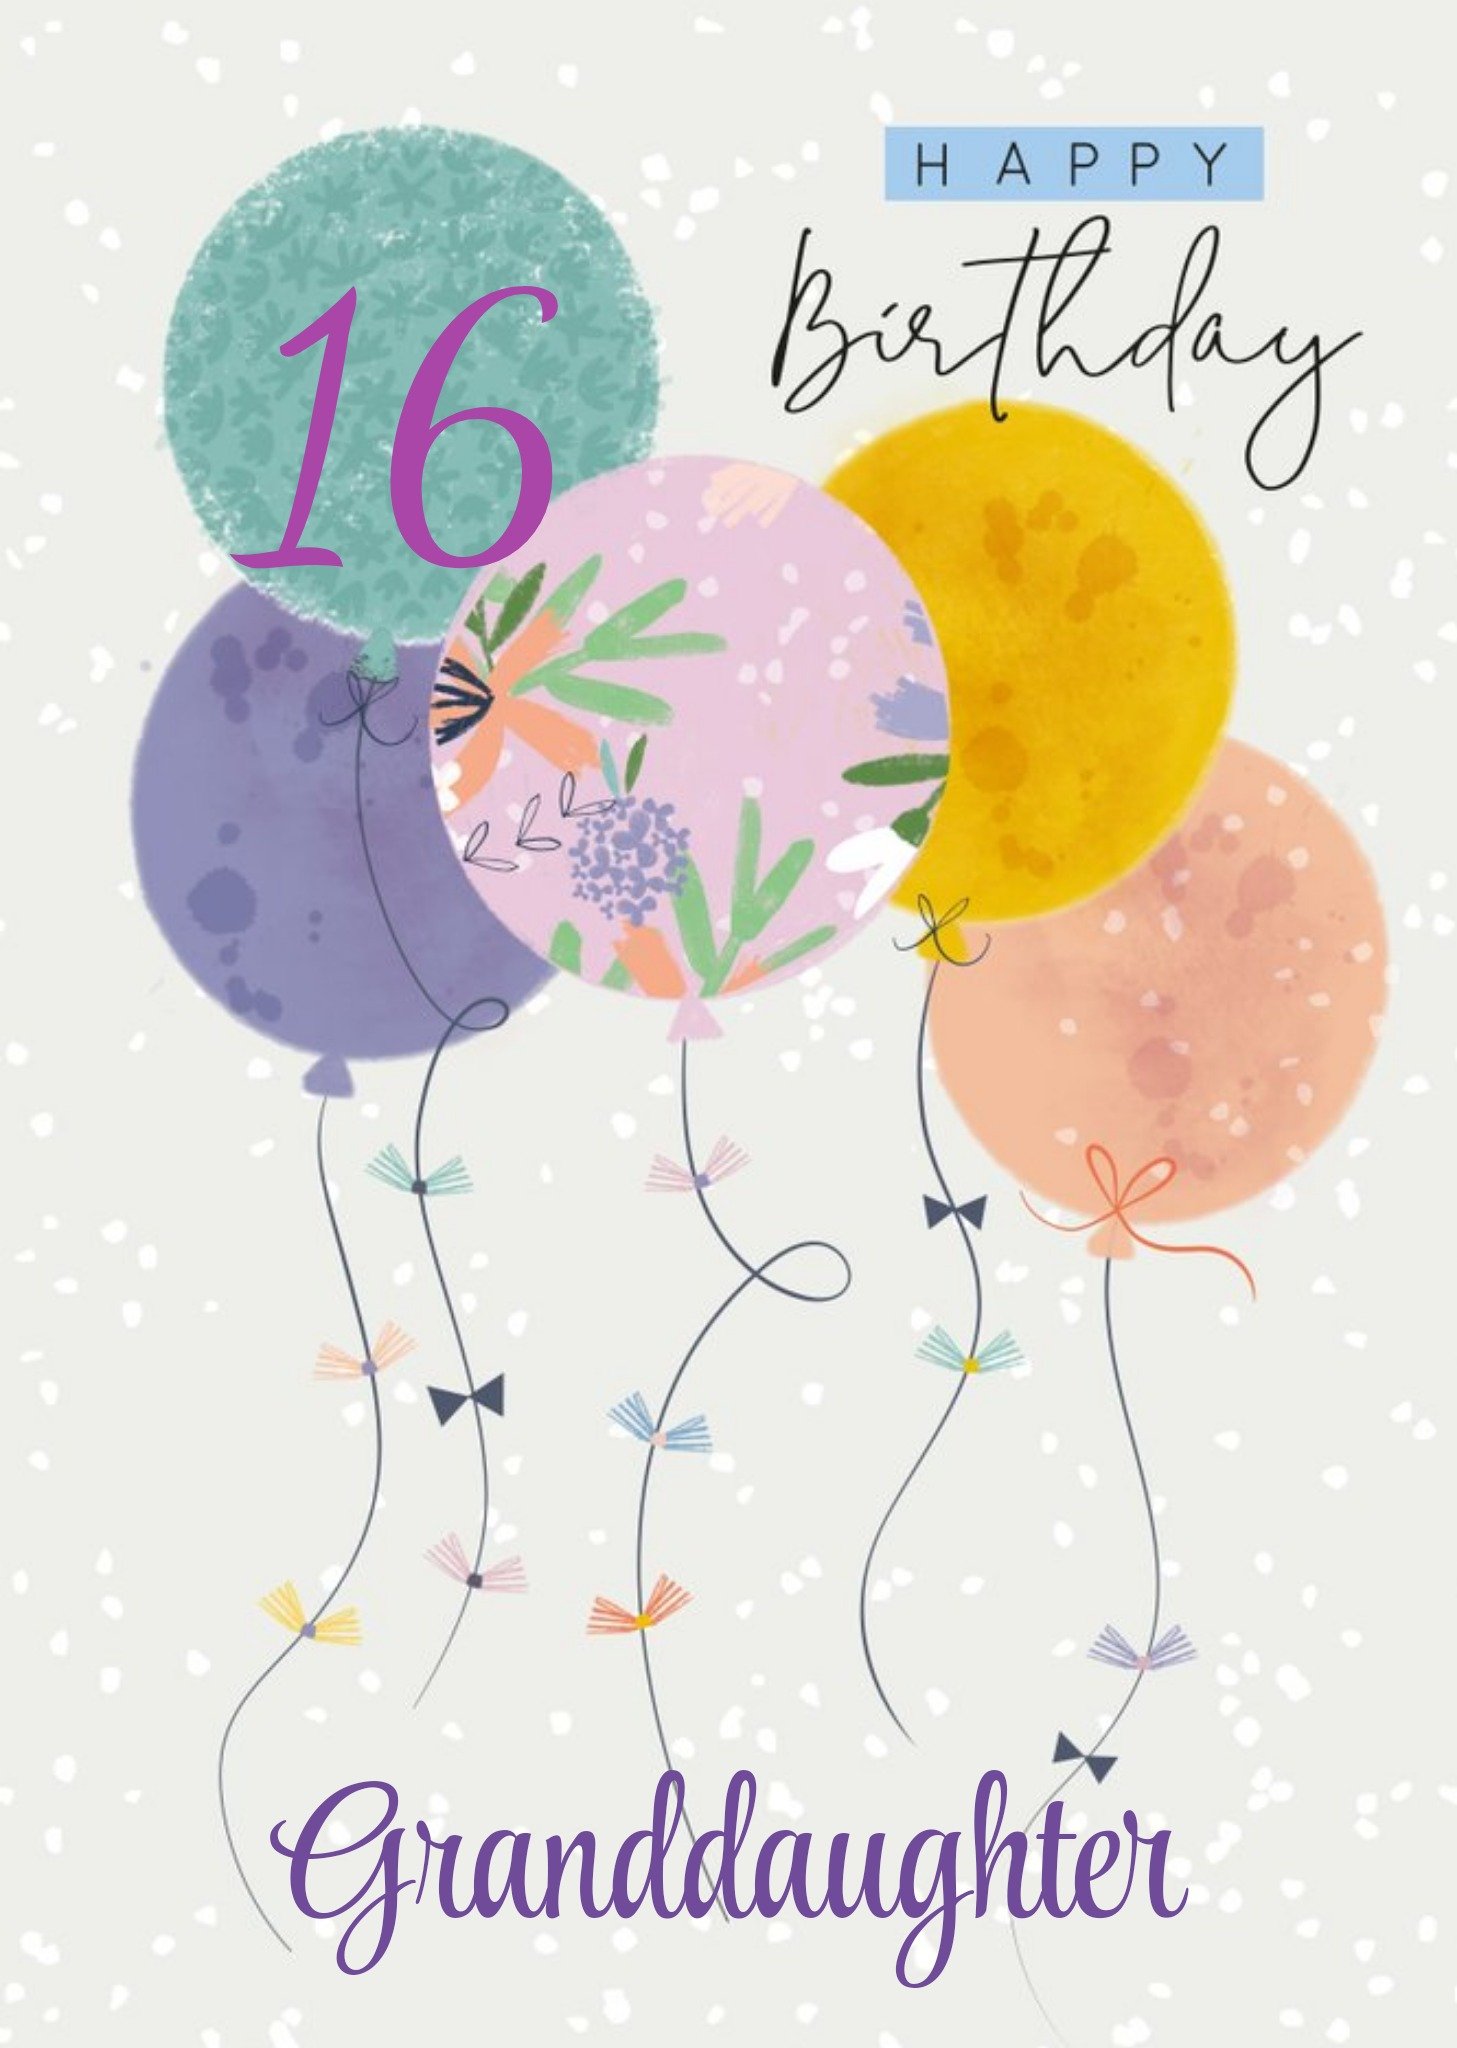 Moonpig Laura Darrington Modern Balloons Birthday 16th Granddaughter Card Ecard